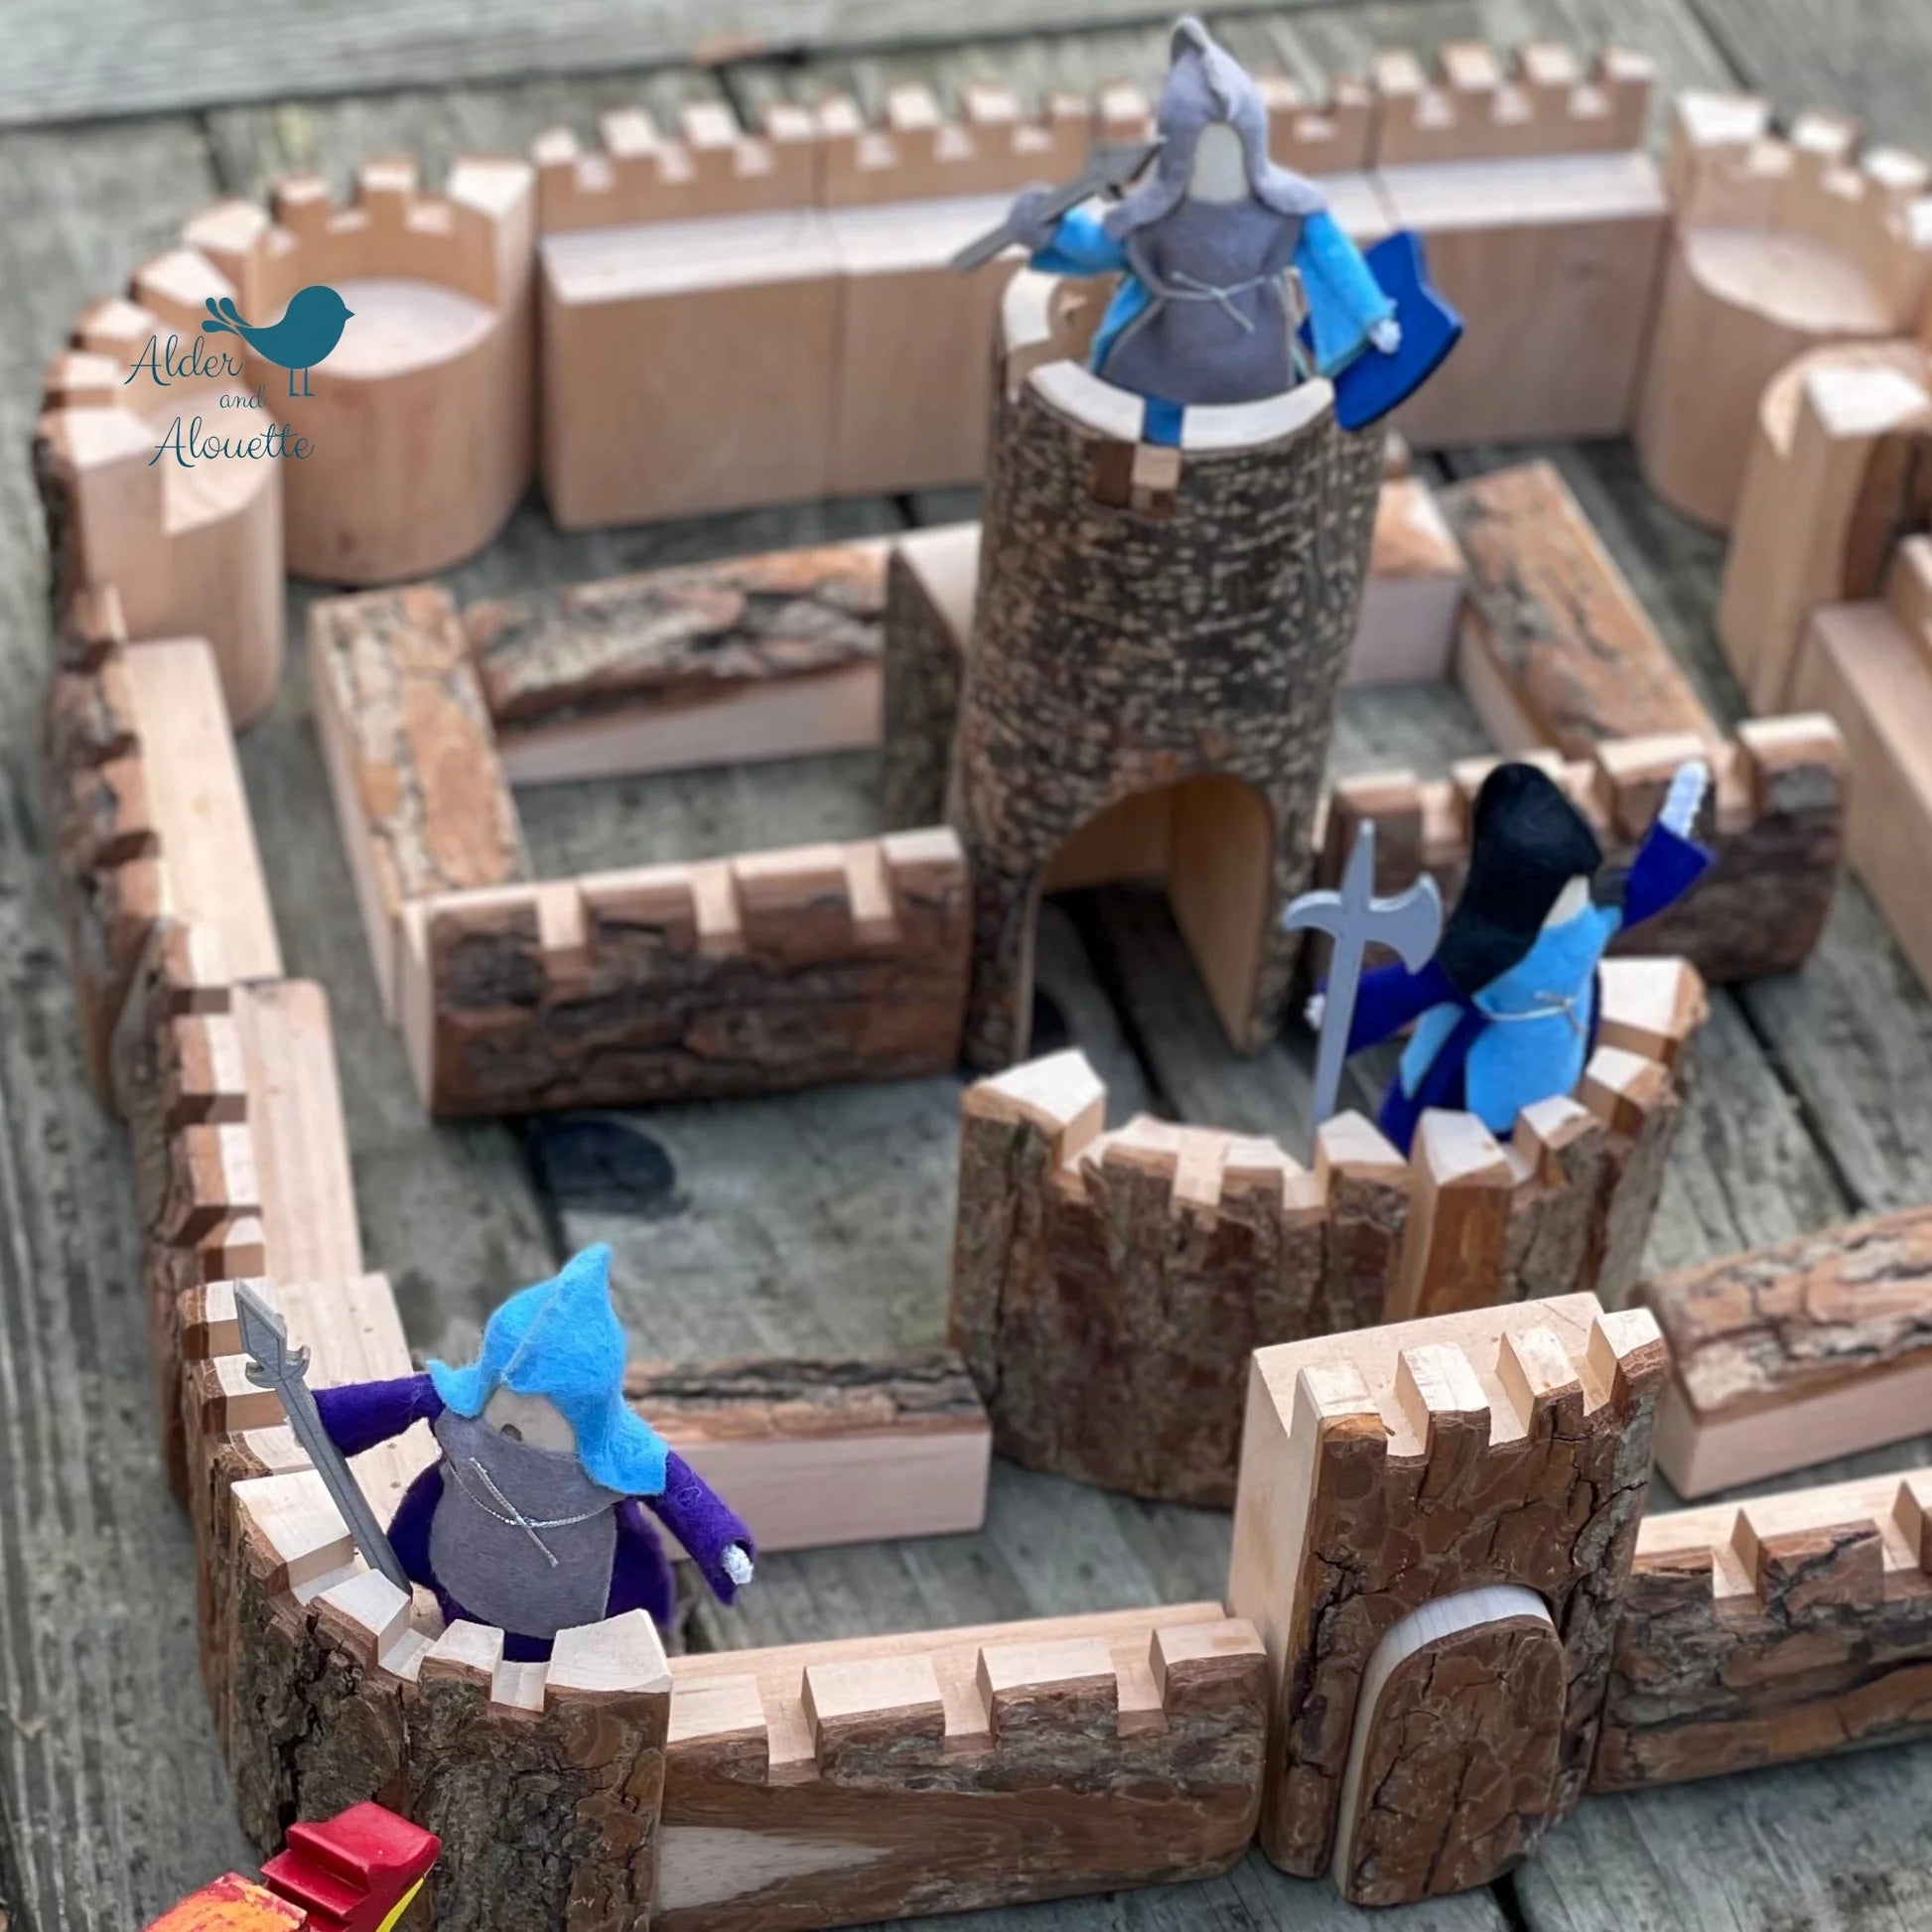 camelot castle blocks- 35 pieces